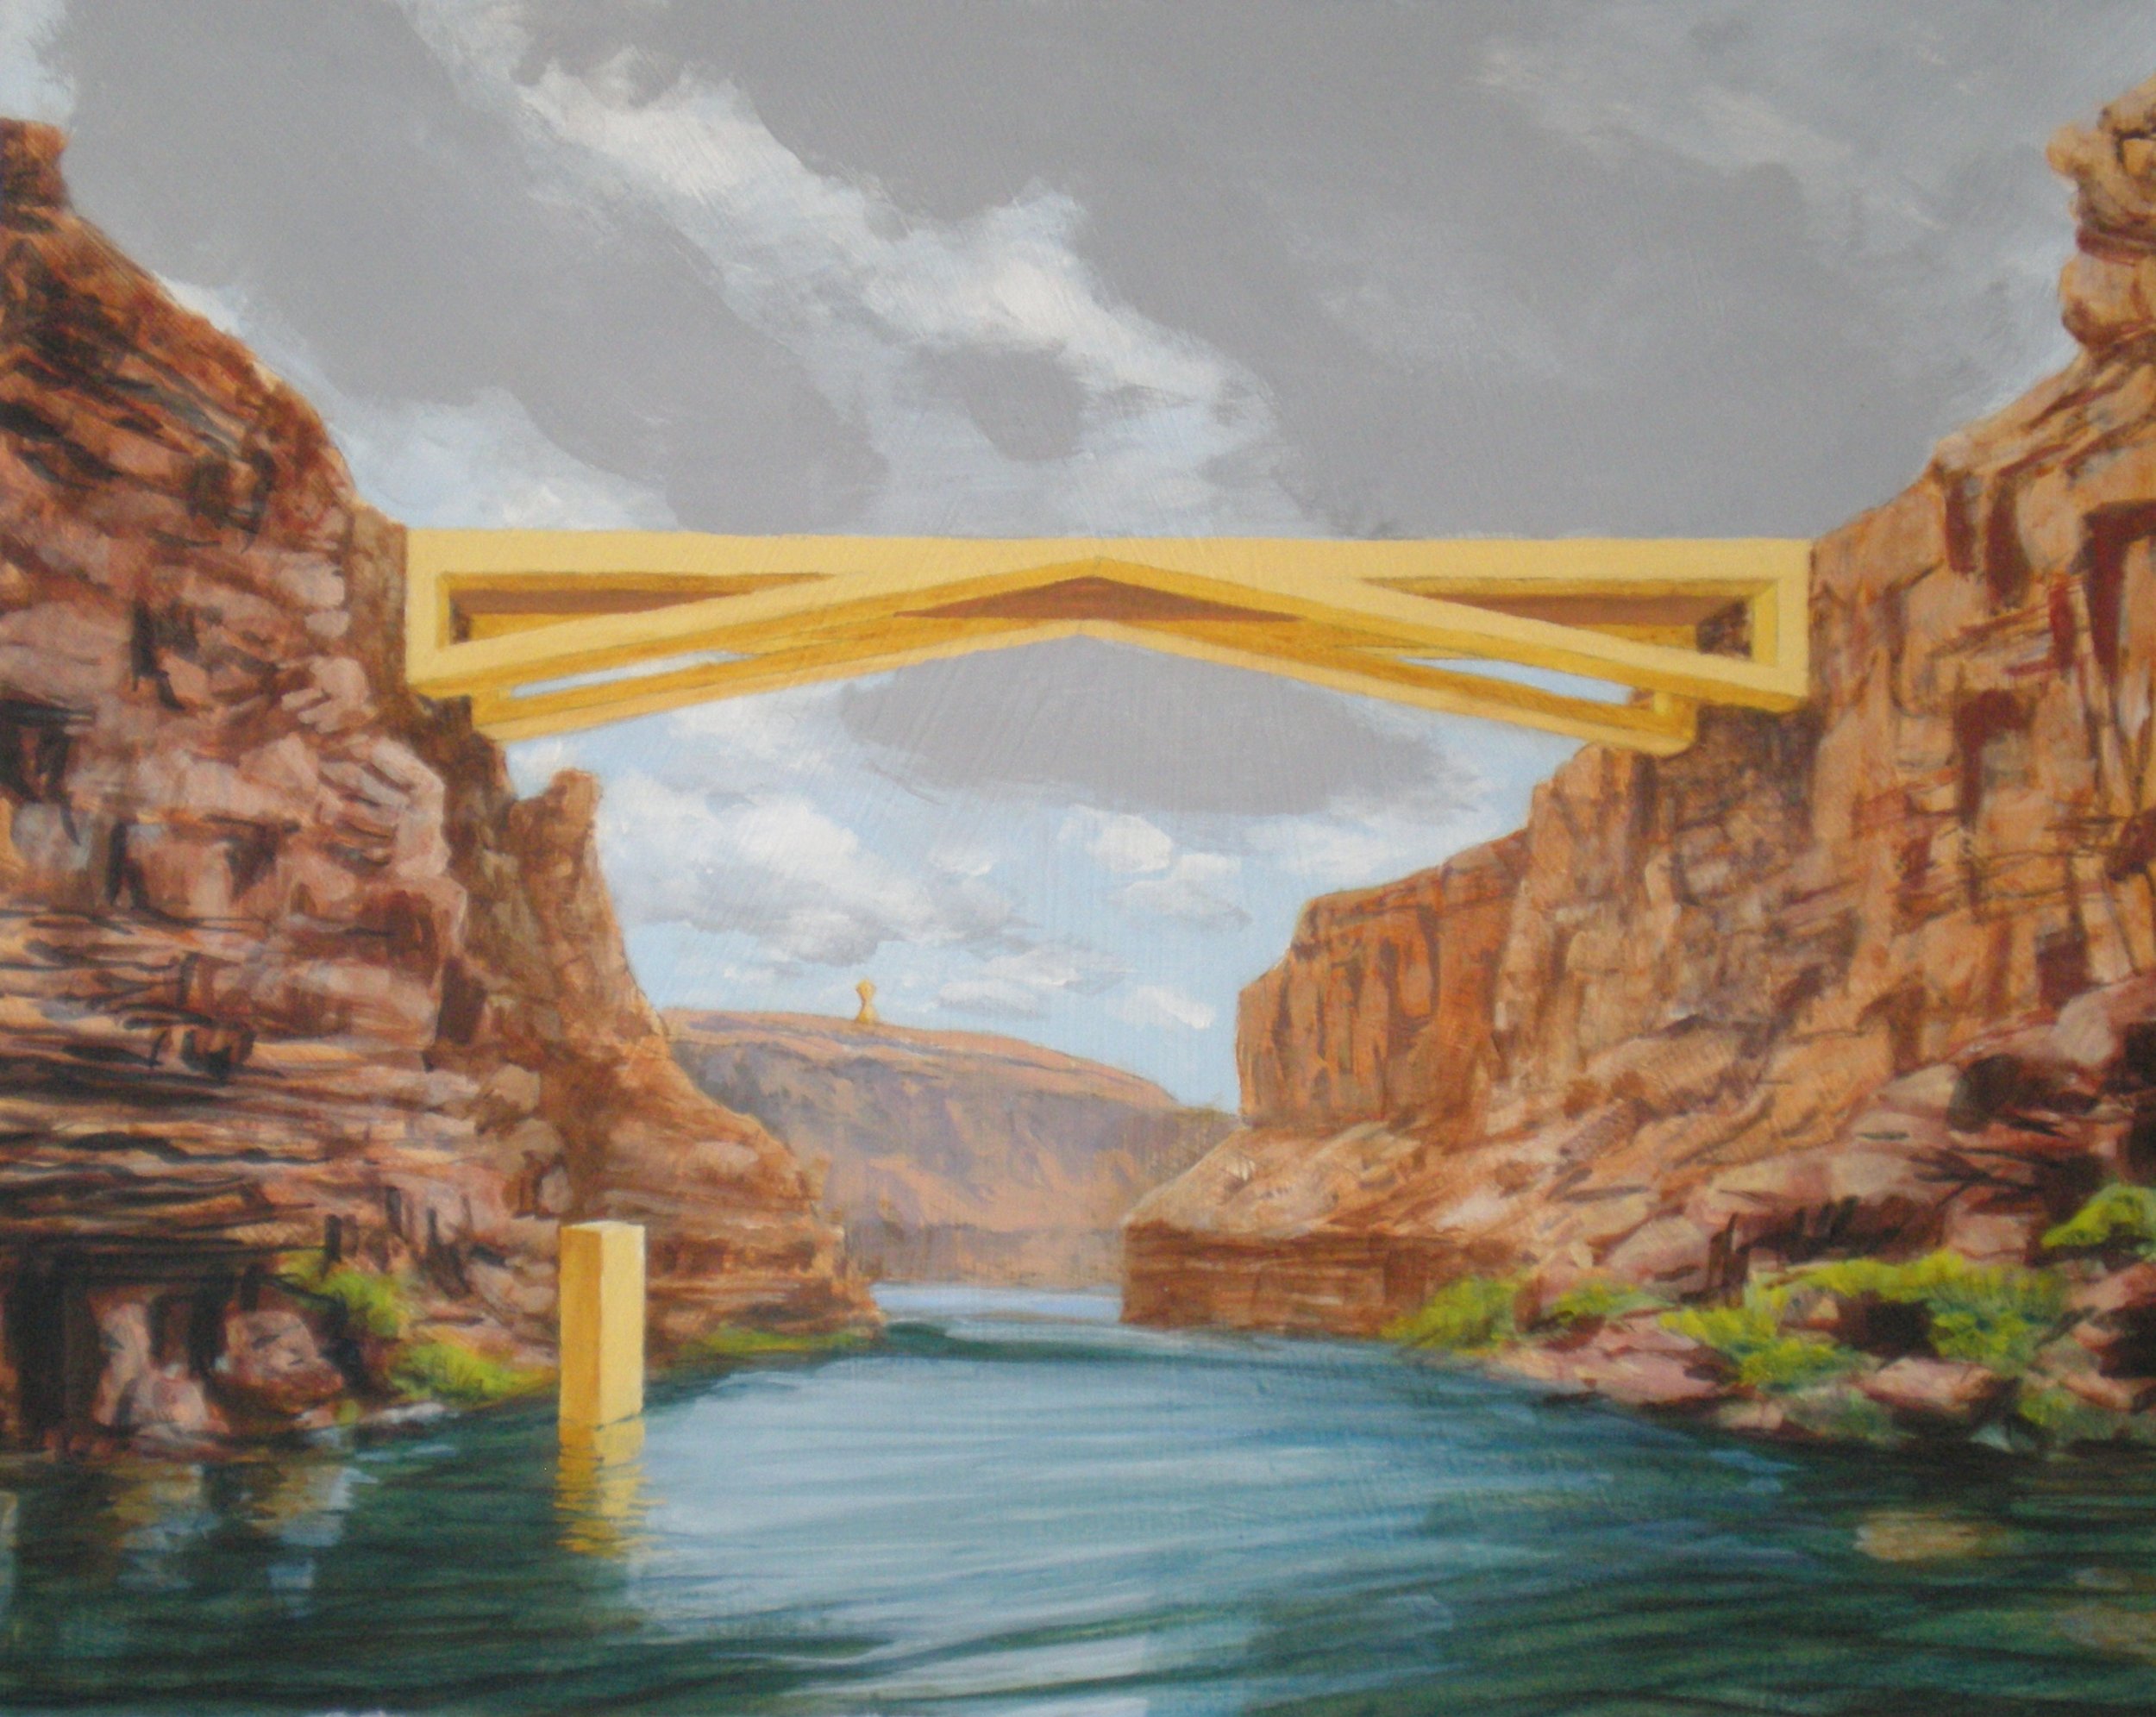 Yellow Bridge, Acrylic on hardboard, 16x20